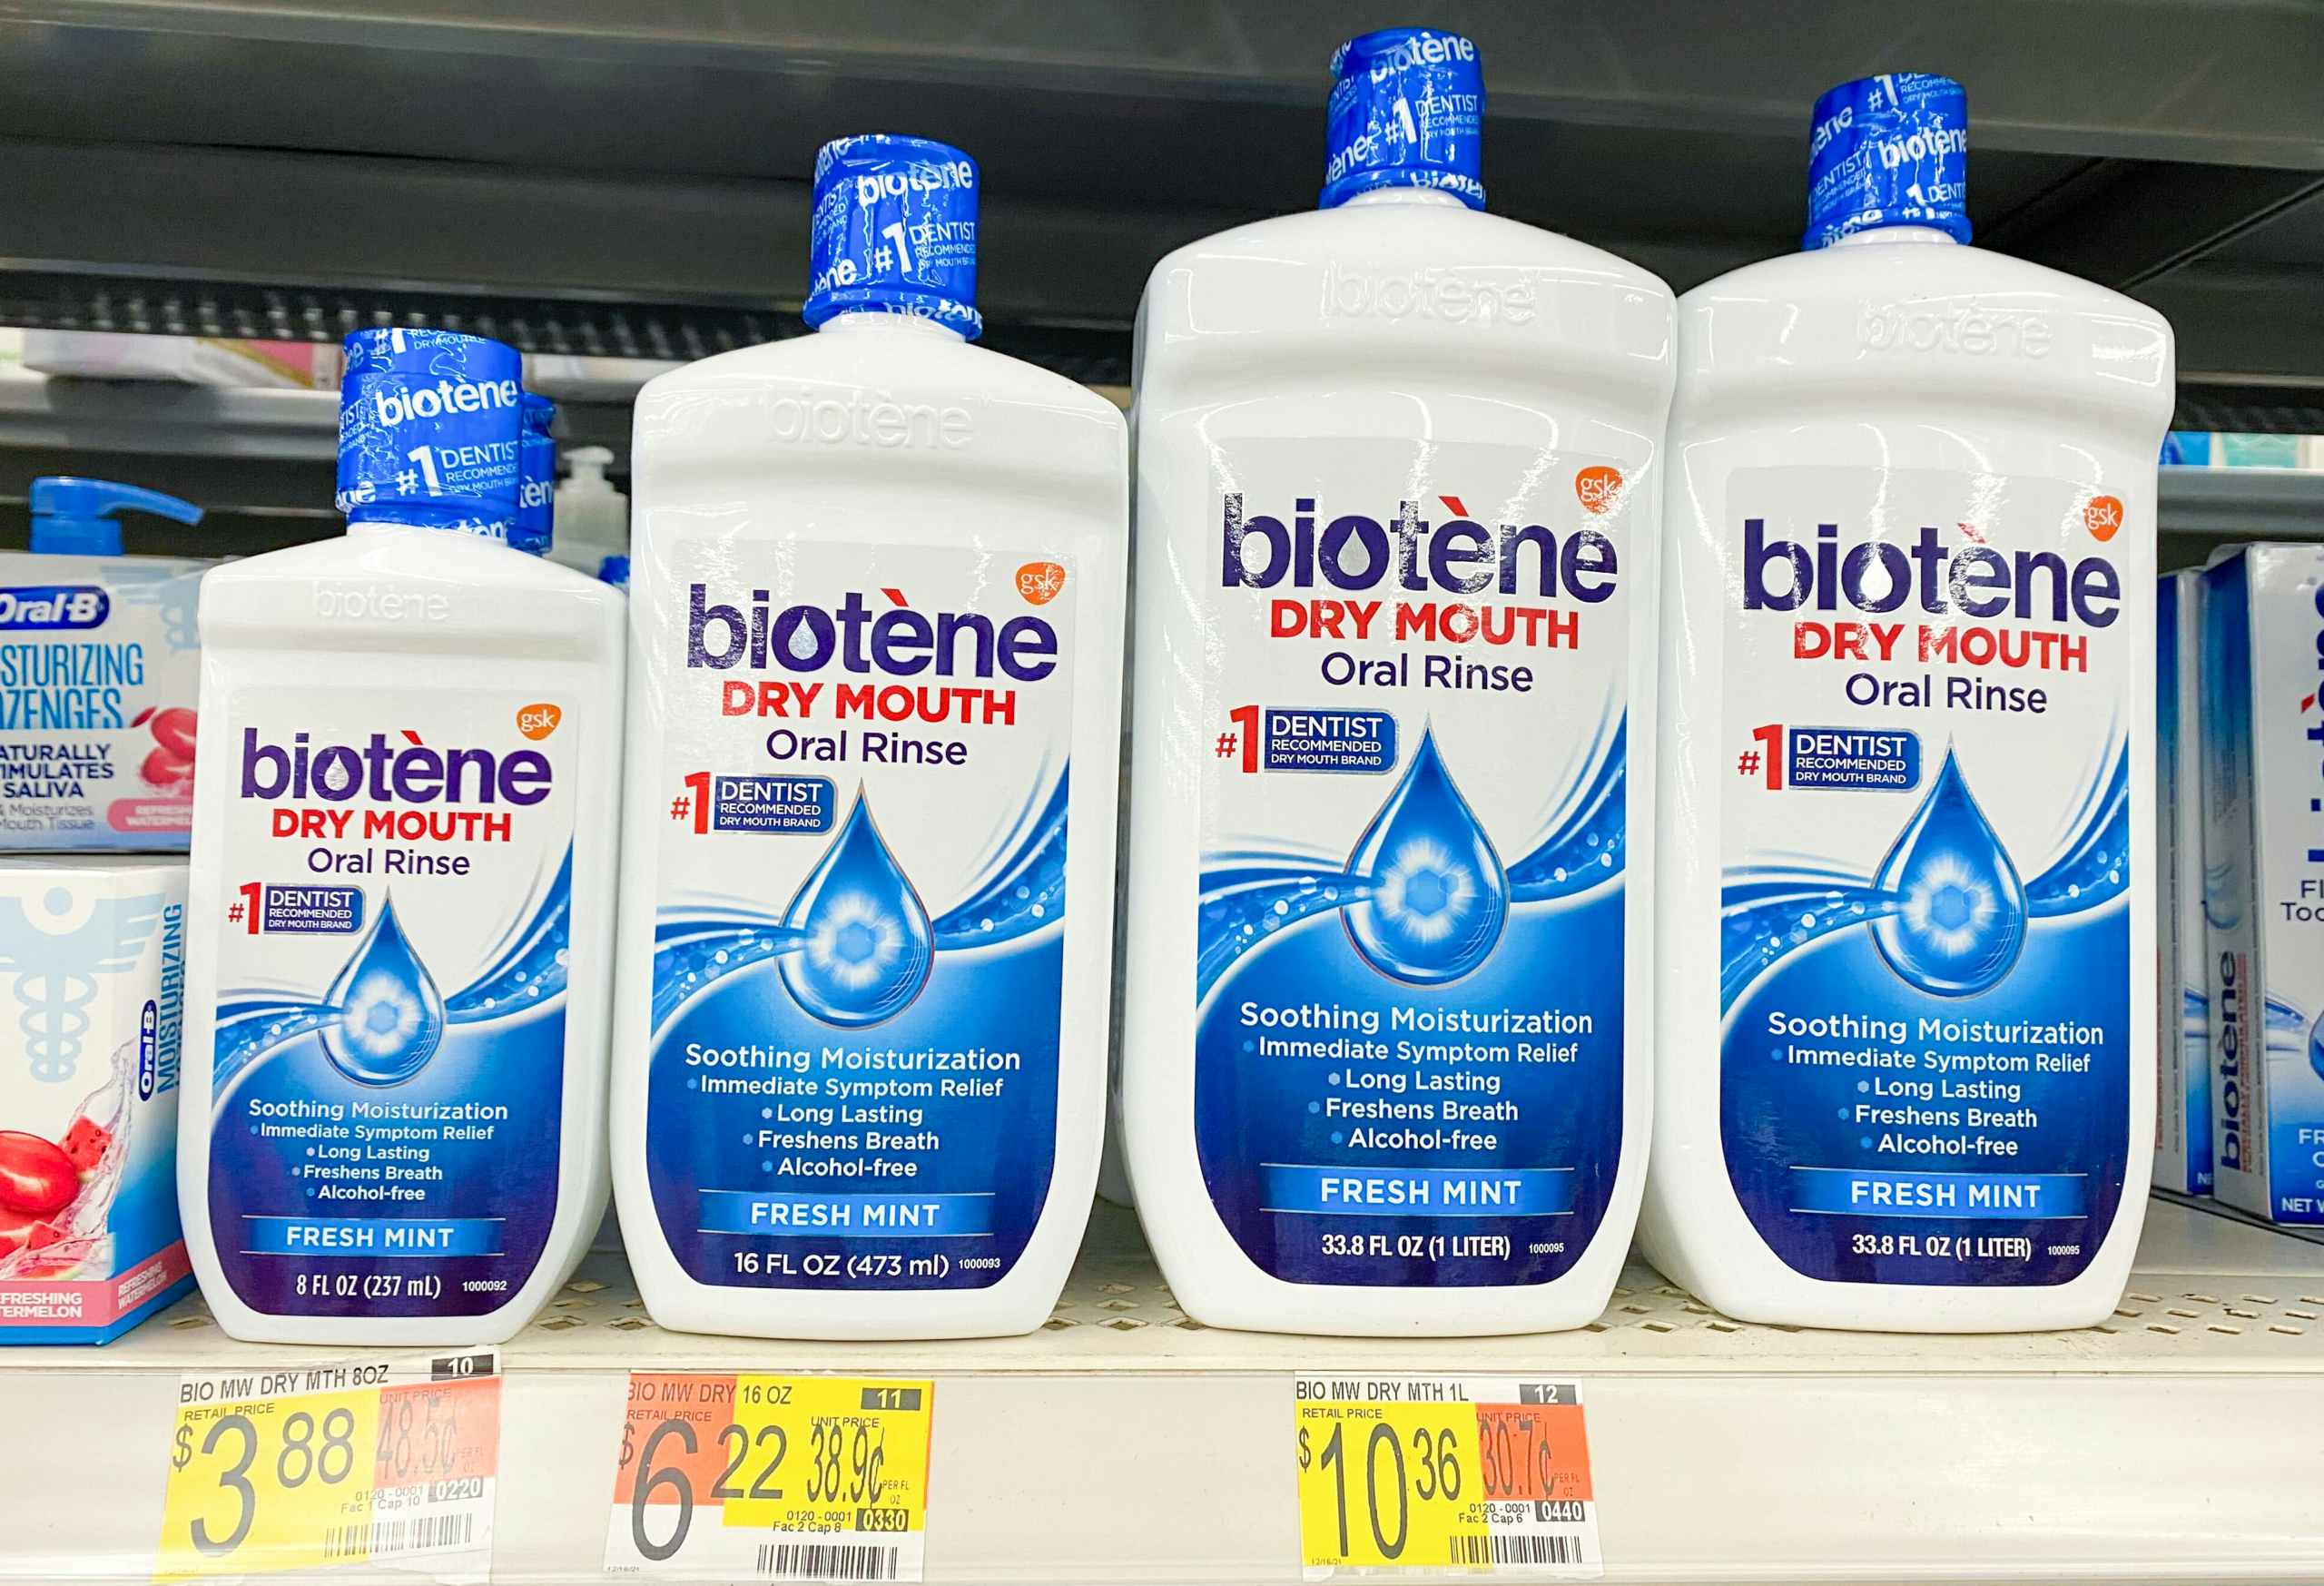 Biotene Oral Rinse at Walmart